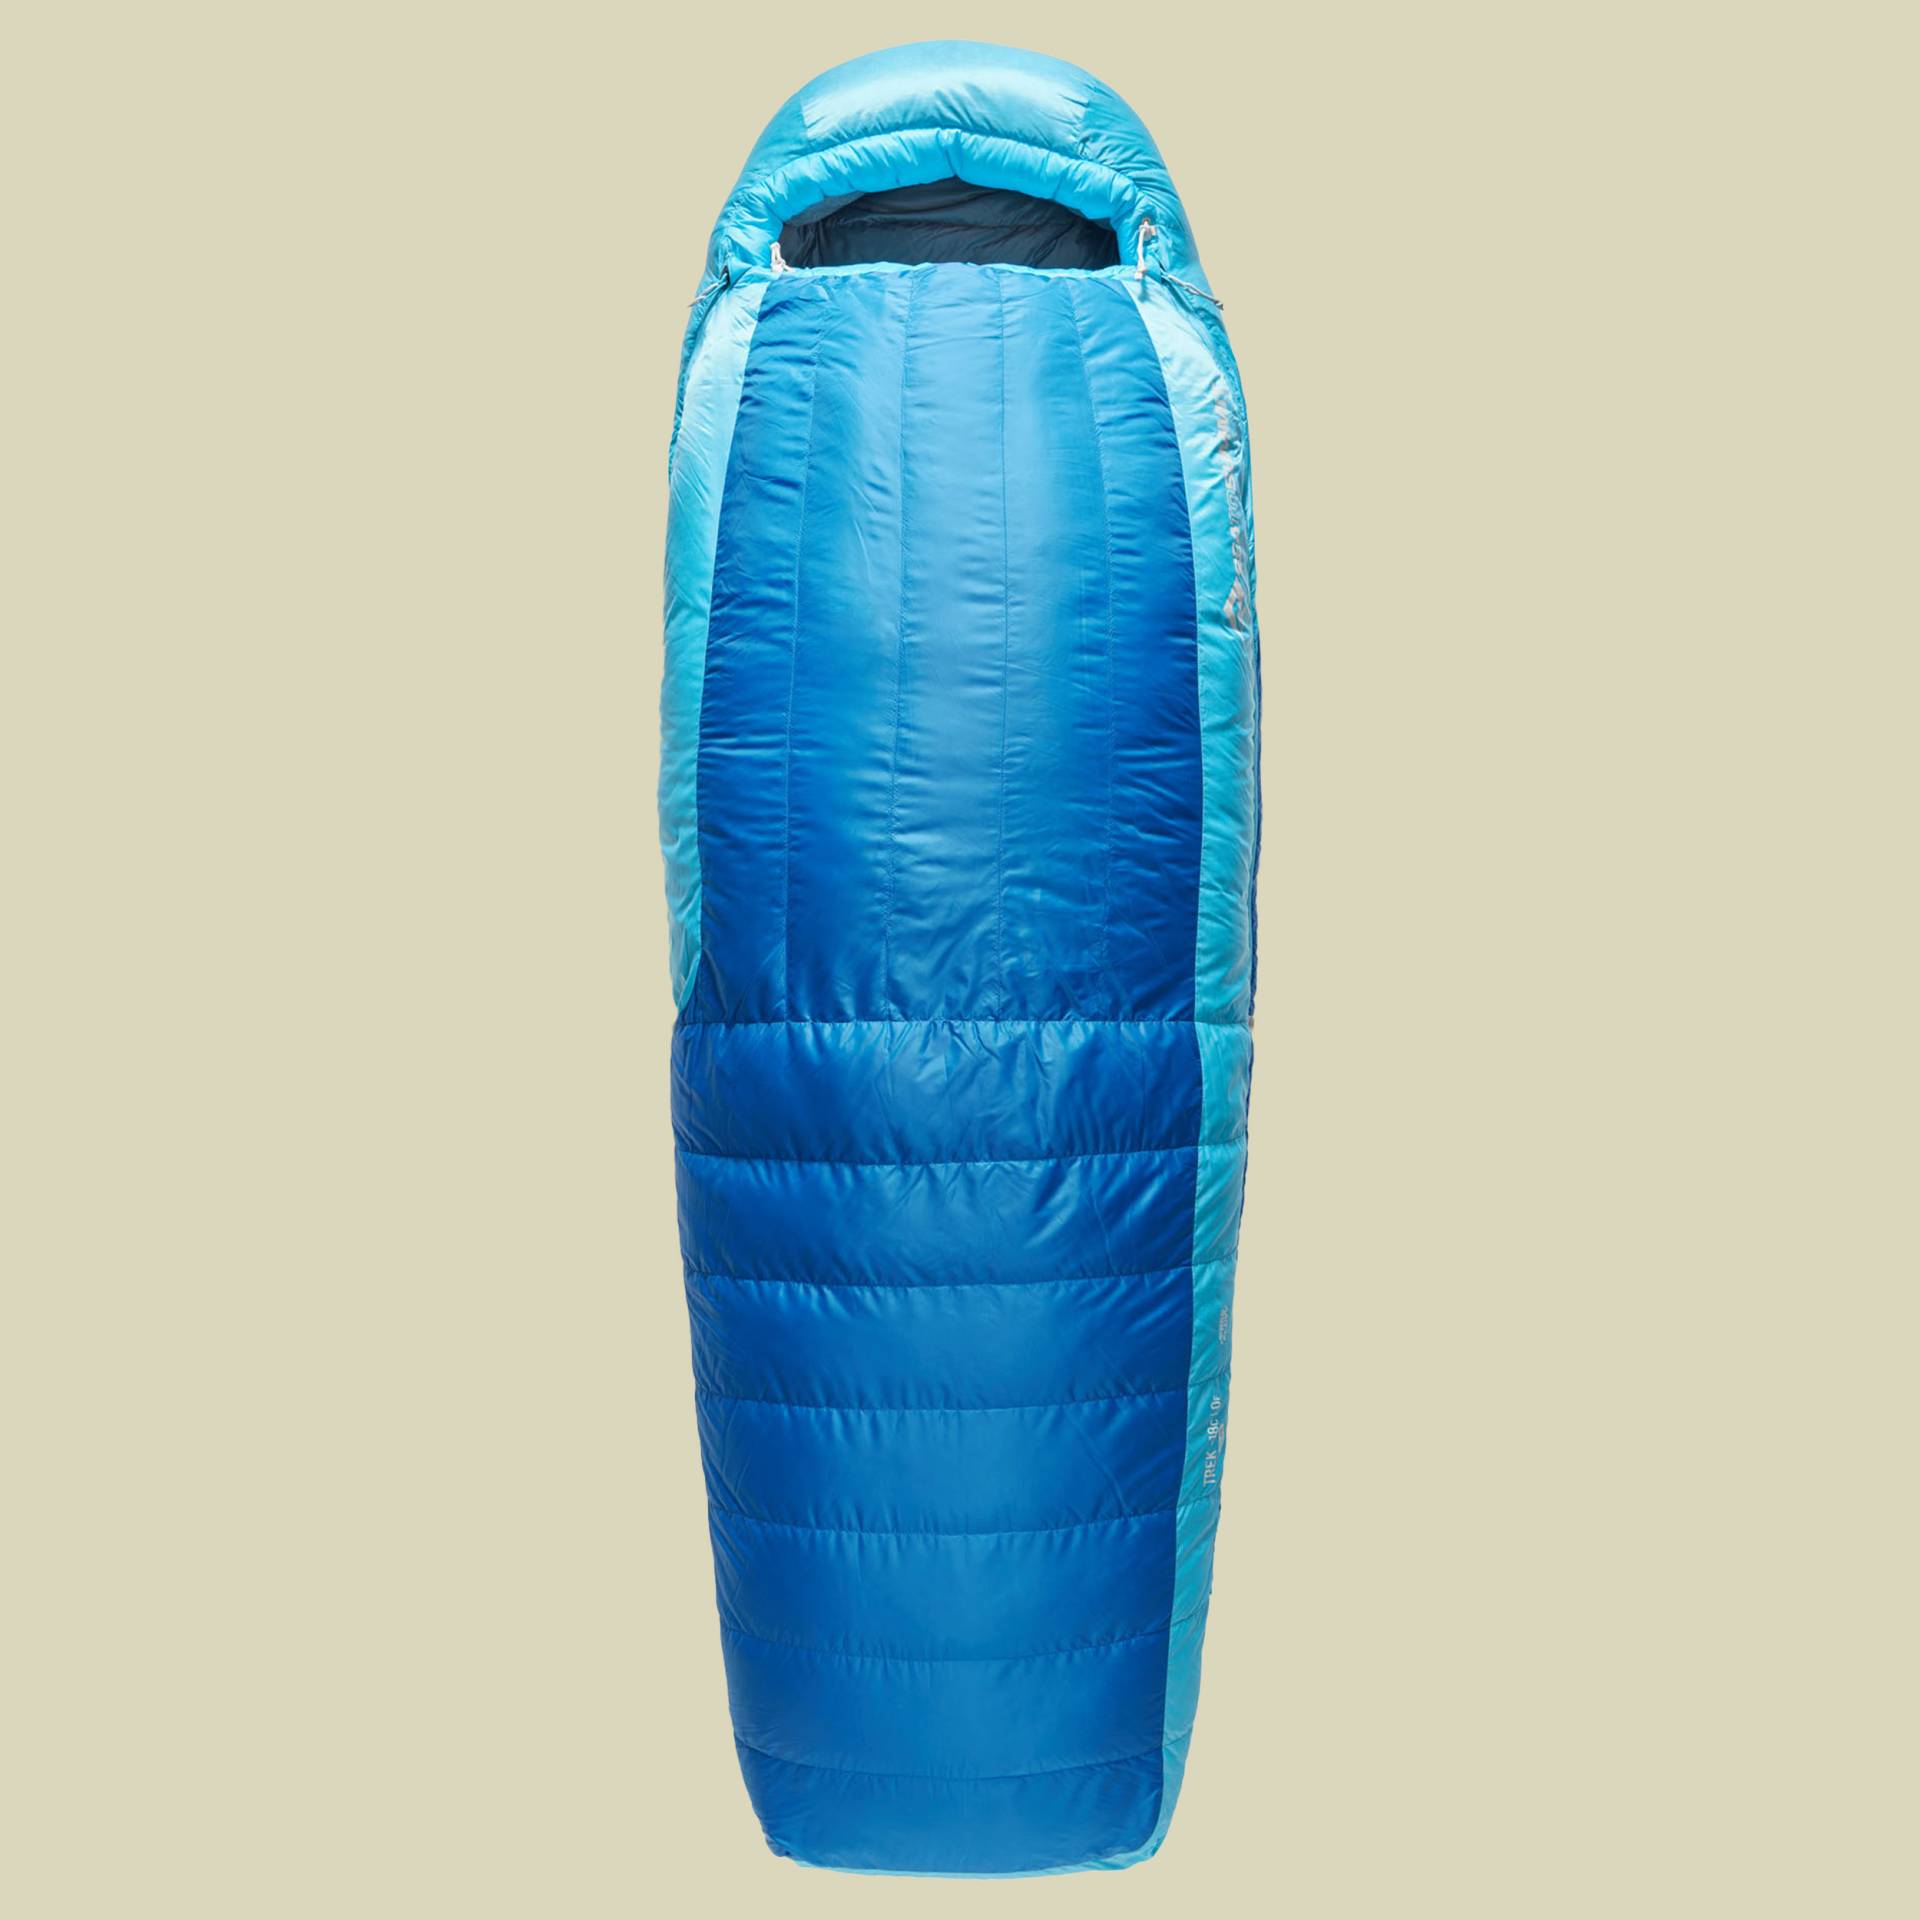 Trek -18C Down Sleeping Bag 185 cm blau - regular snorkel blue von Sea to Summit